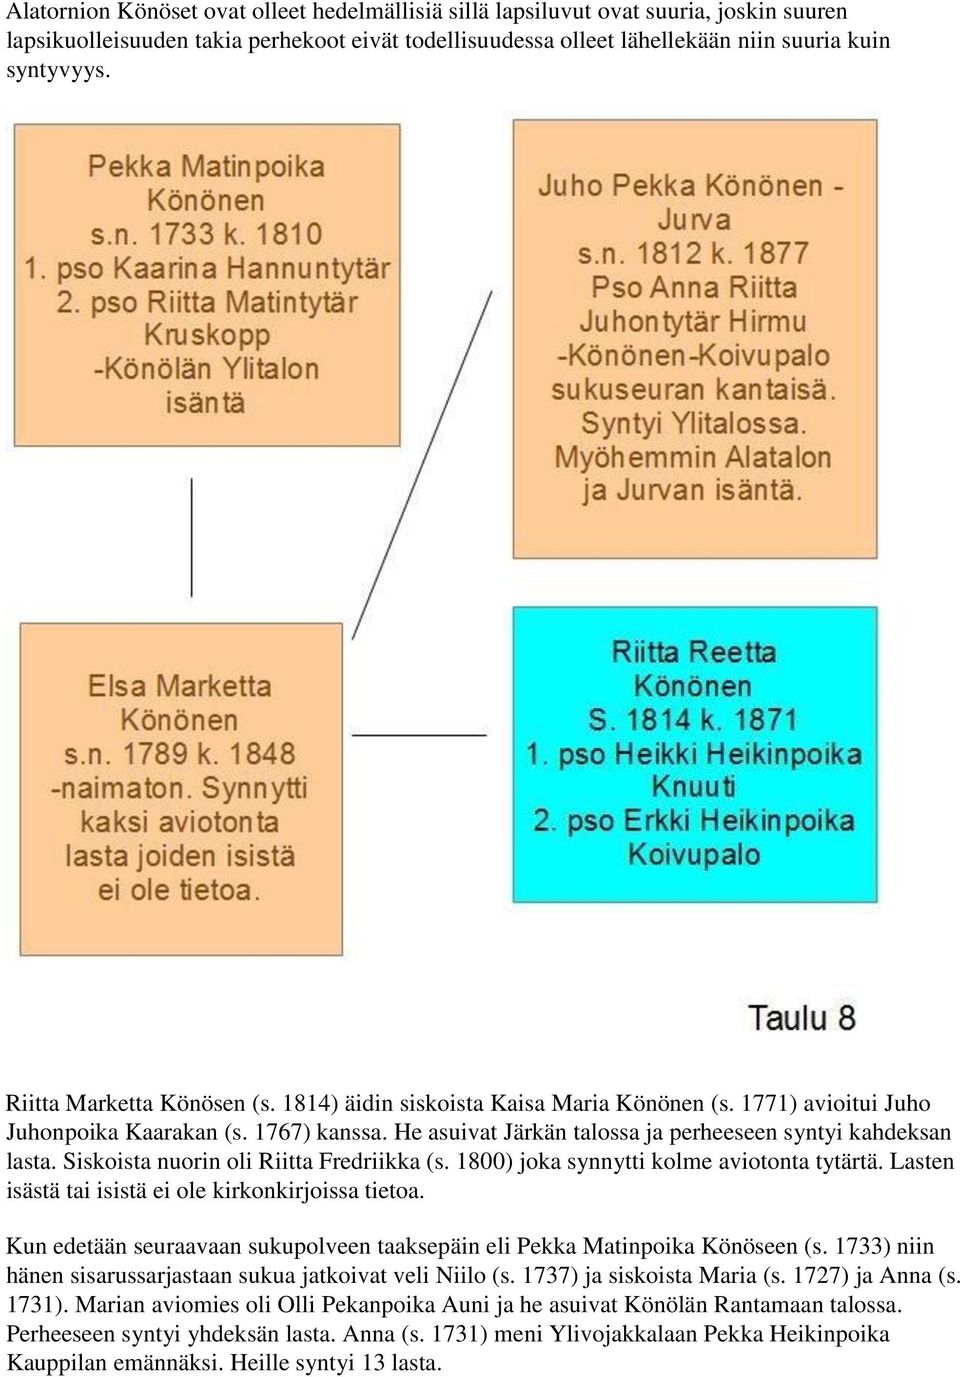 Siskoista nuorin oli Riitta Fredriikka (s. 1800) joka synnytti kolme aviotonta tytärtä. Lasten isästä tai isistä ei ole kirkonkirjoissa tietoa.